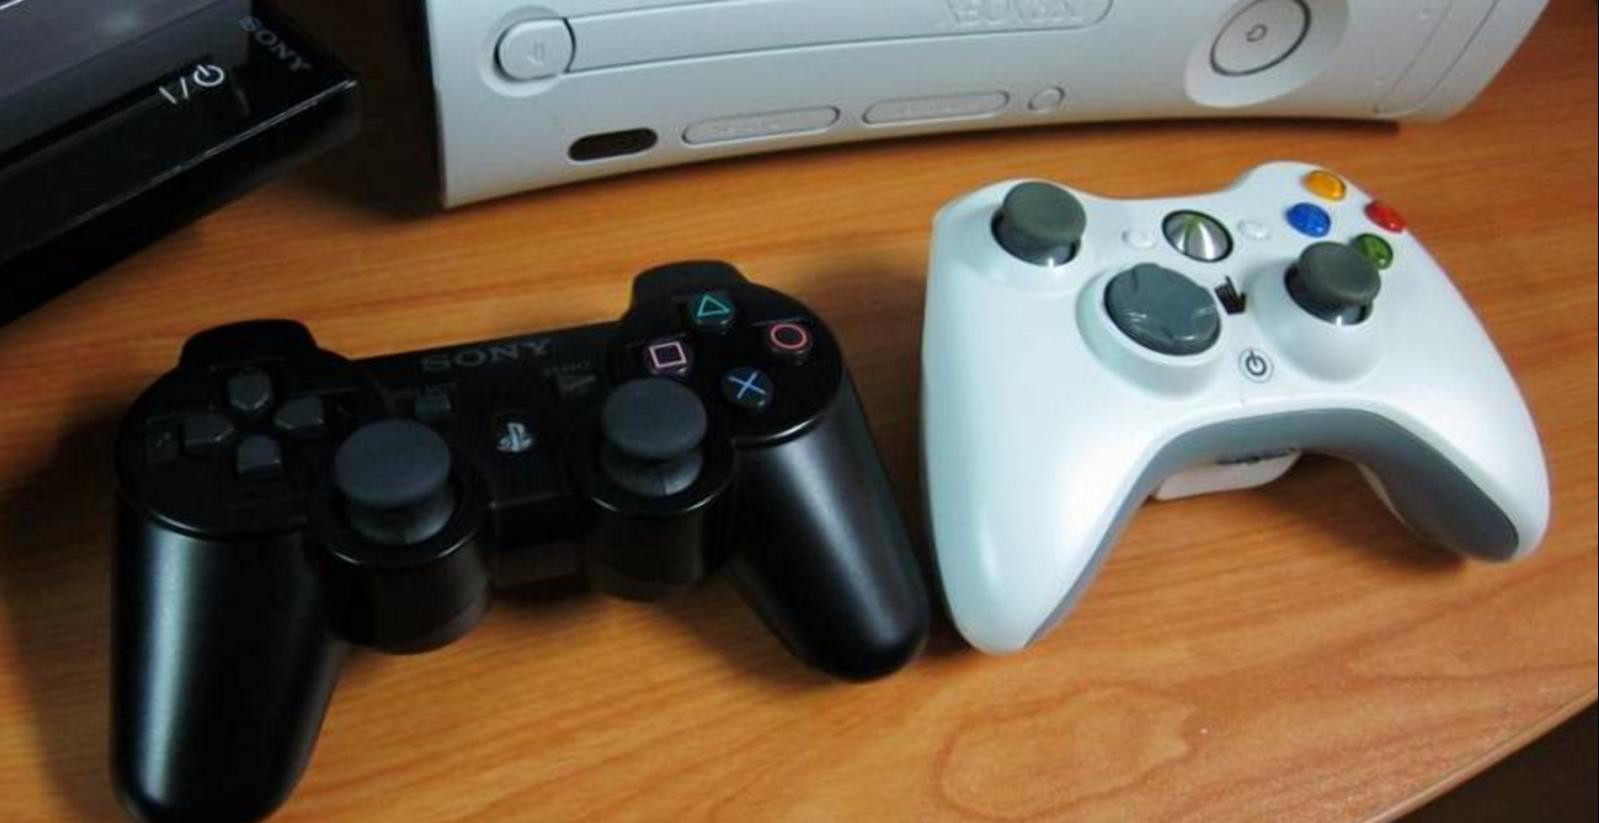 Xbox 360 play. Плейстейшен Xbox 360. Геймпад Xbox 360 и ps3. ПС 3 вс иксбокс 360. Xbox 360 vs ps3 контроллер.